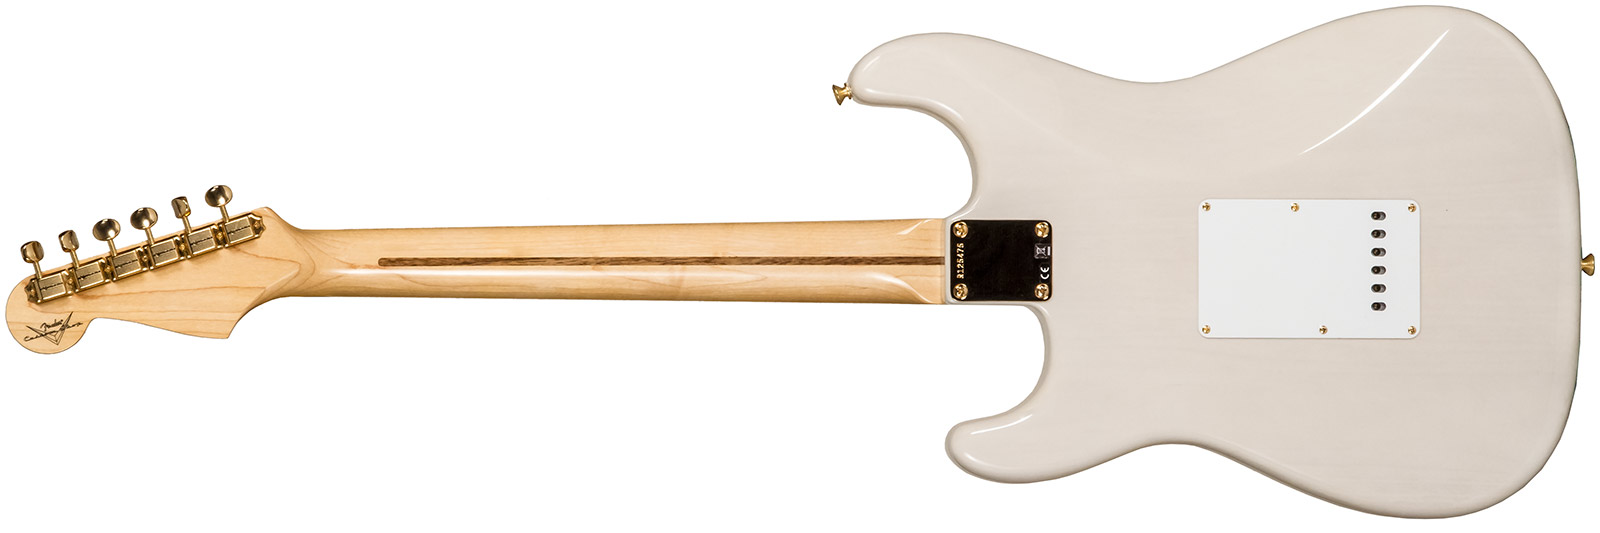 Fender Custom Shop Strat 1957 3s Trem Mn #r125475 - Nos White Blonde - Str shape electric guitar - Variation 1